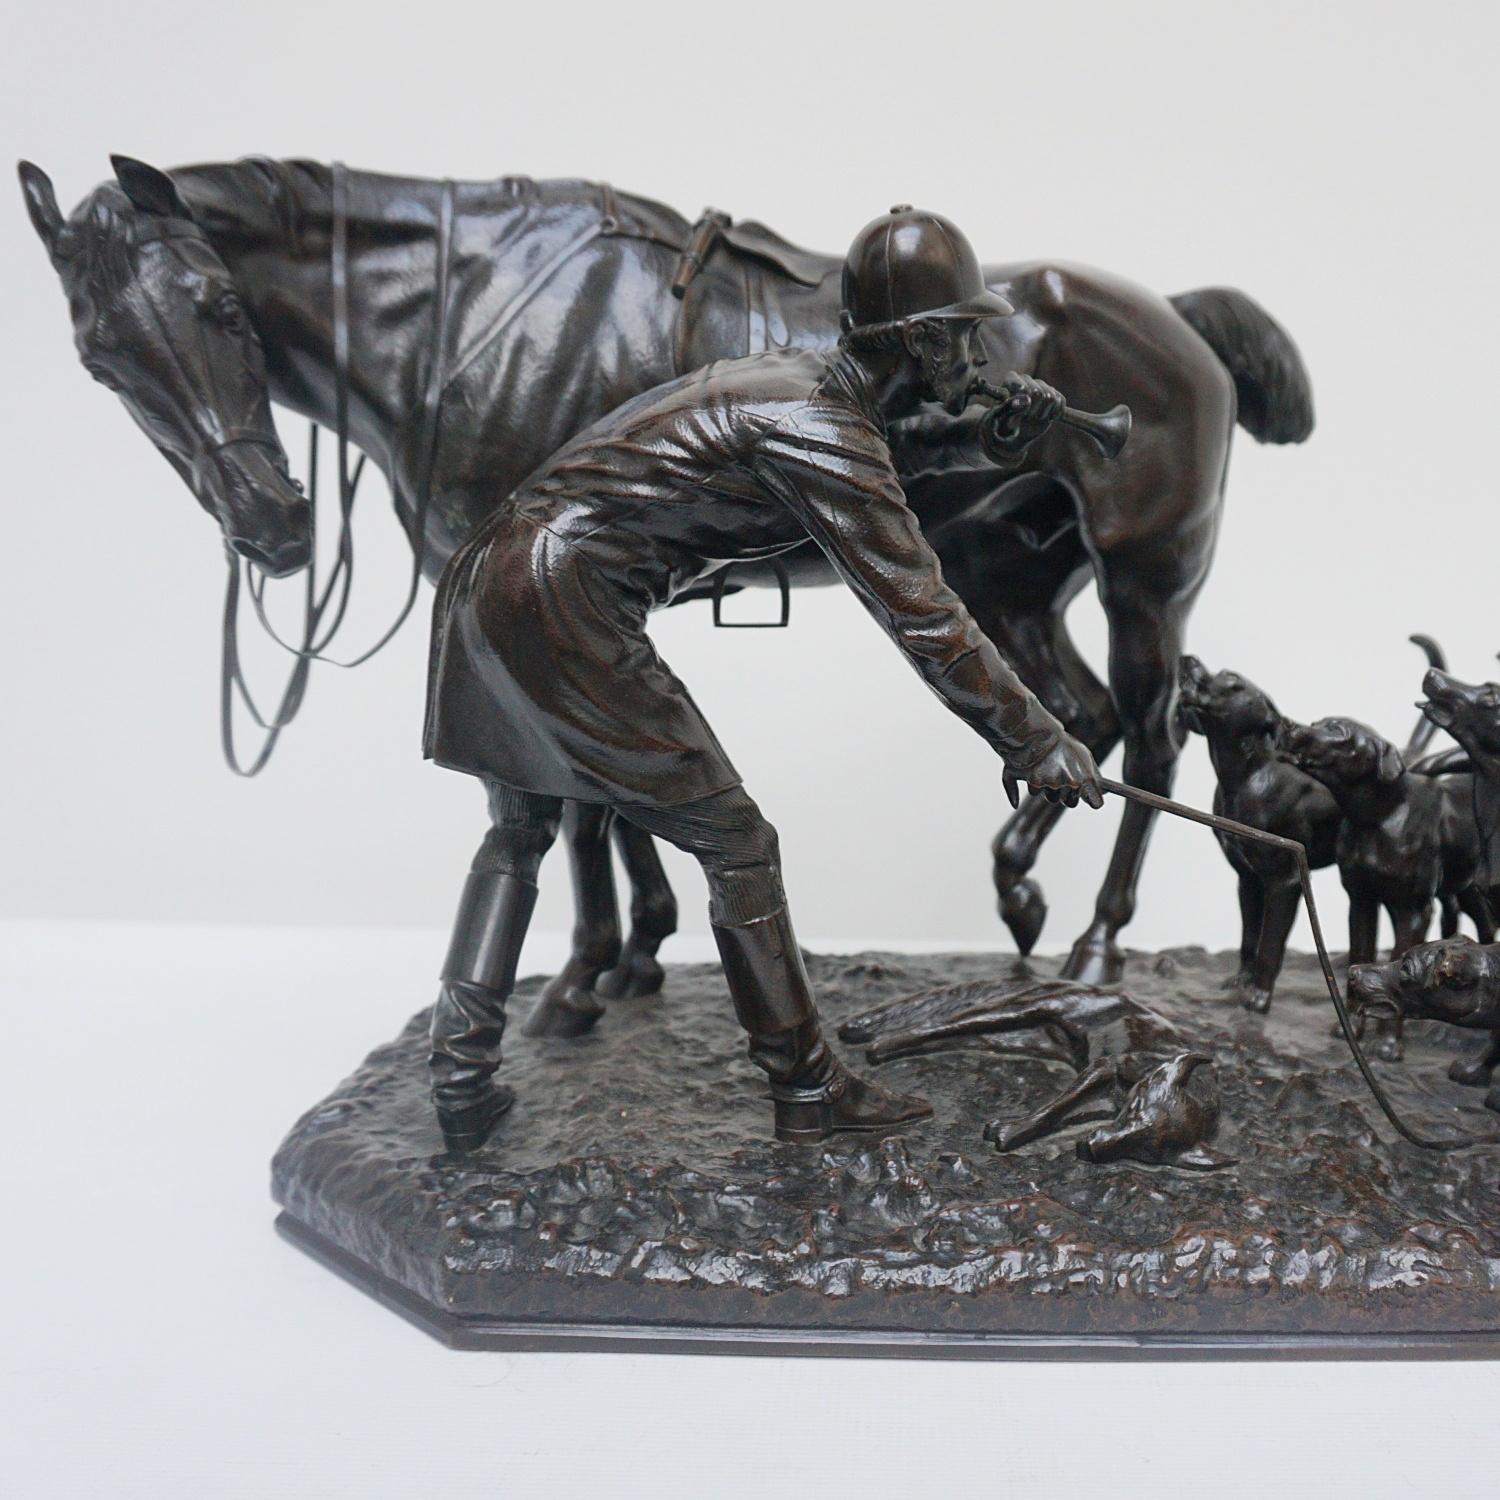 Eine patinierte Bronzeskulptur von John Willis Good (1845-1878), die eine englische Fuchsjagd-Szene darstellt. Ein gesatteltes Pferd steht pflichtbewusst rittlings auf seinem Herrn, die Peitsche in der Hand, während sich die Hunde um den gefangenen